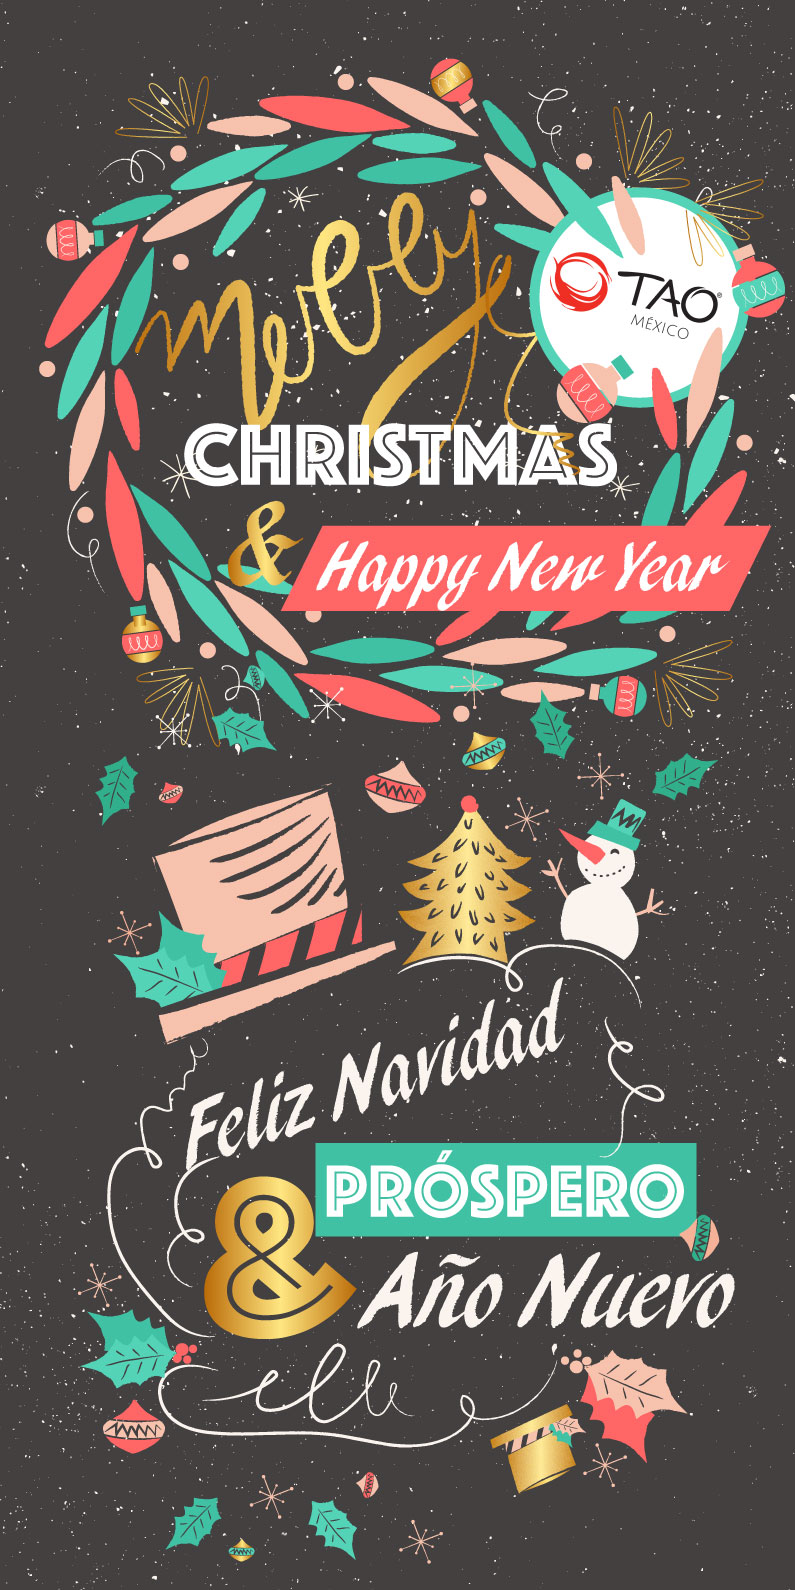 Merry Christmas & Happy New Year // TAO Mexico